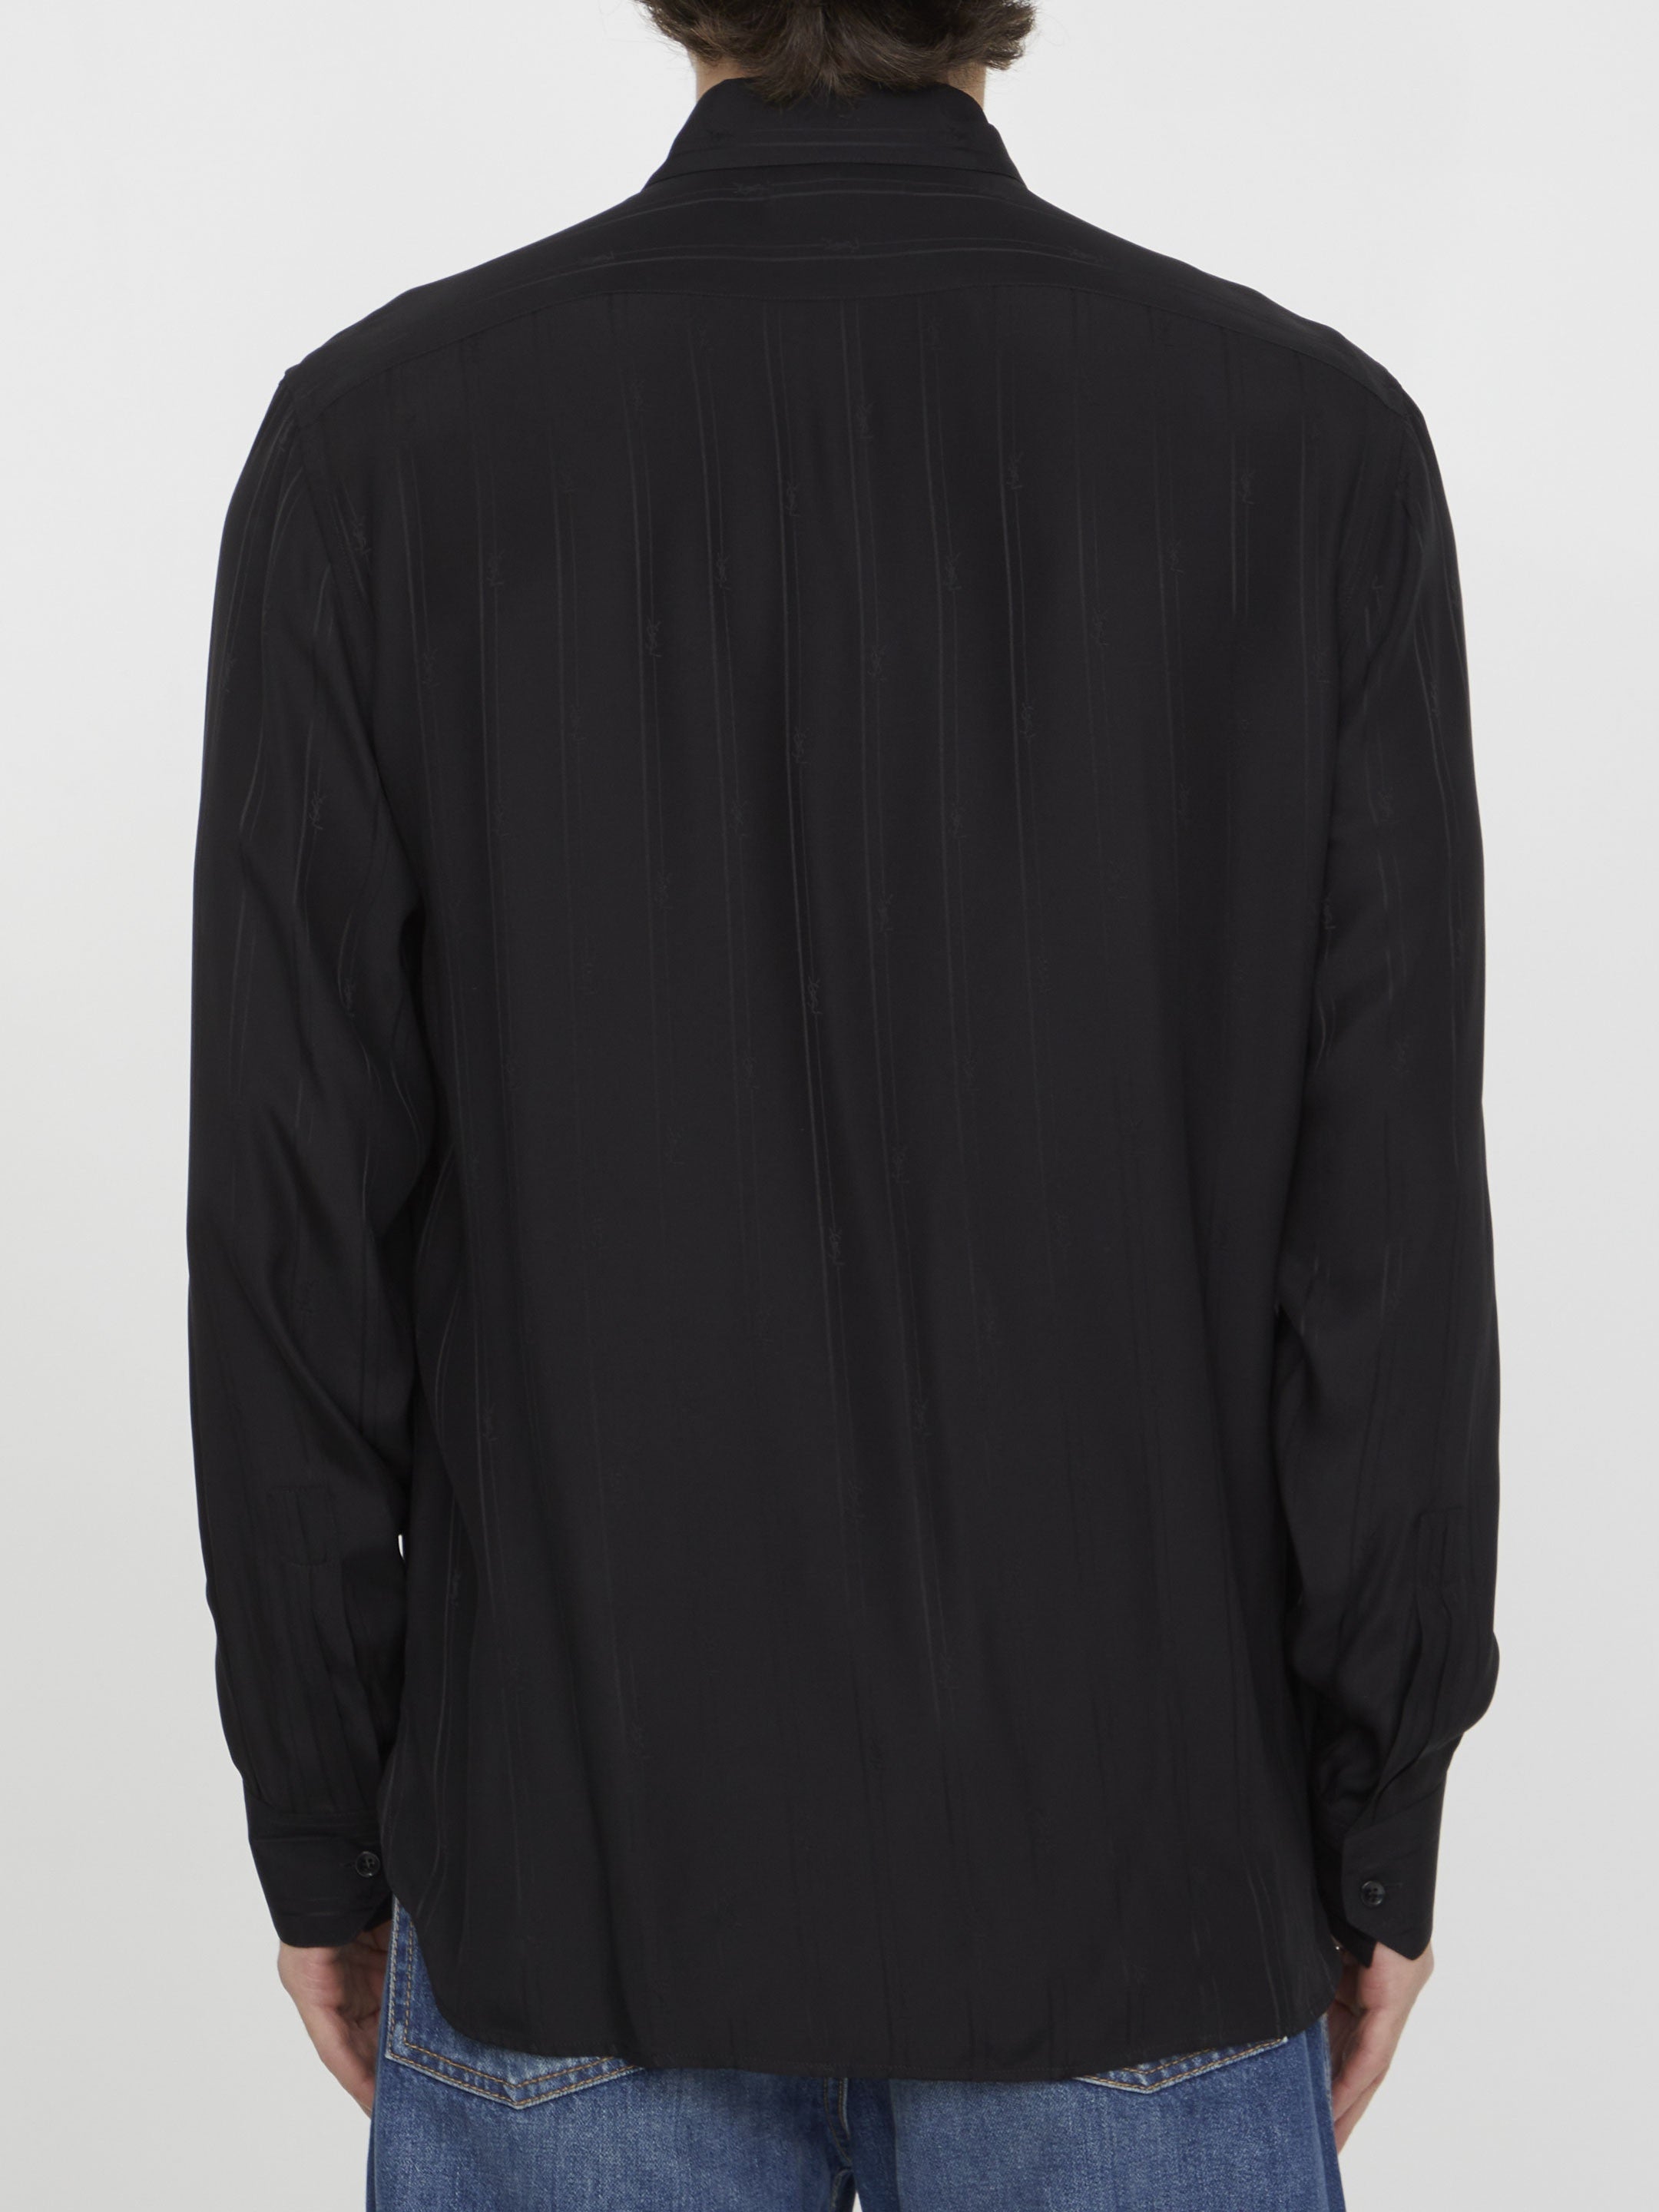 SAINT-LAURENT-OUTLET-SALE-Cassandre-striped-shirt-Shirts-41-BLACK-ARCHIVE-COLLECTION-4.jpg